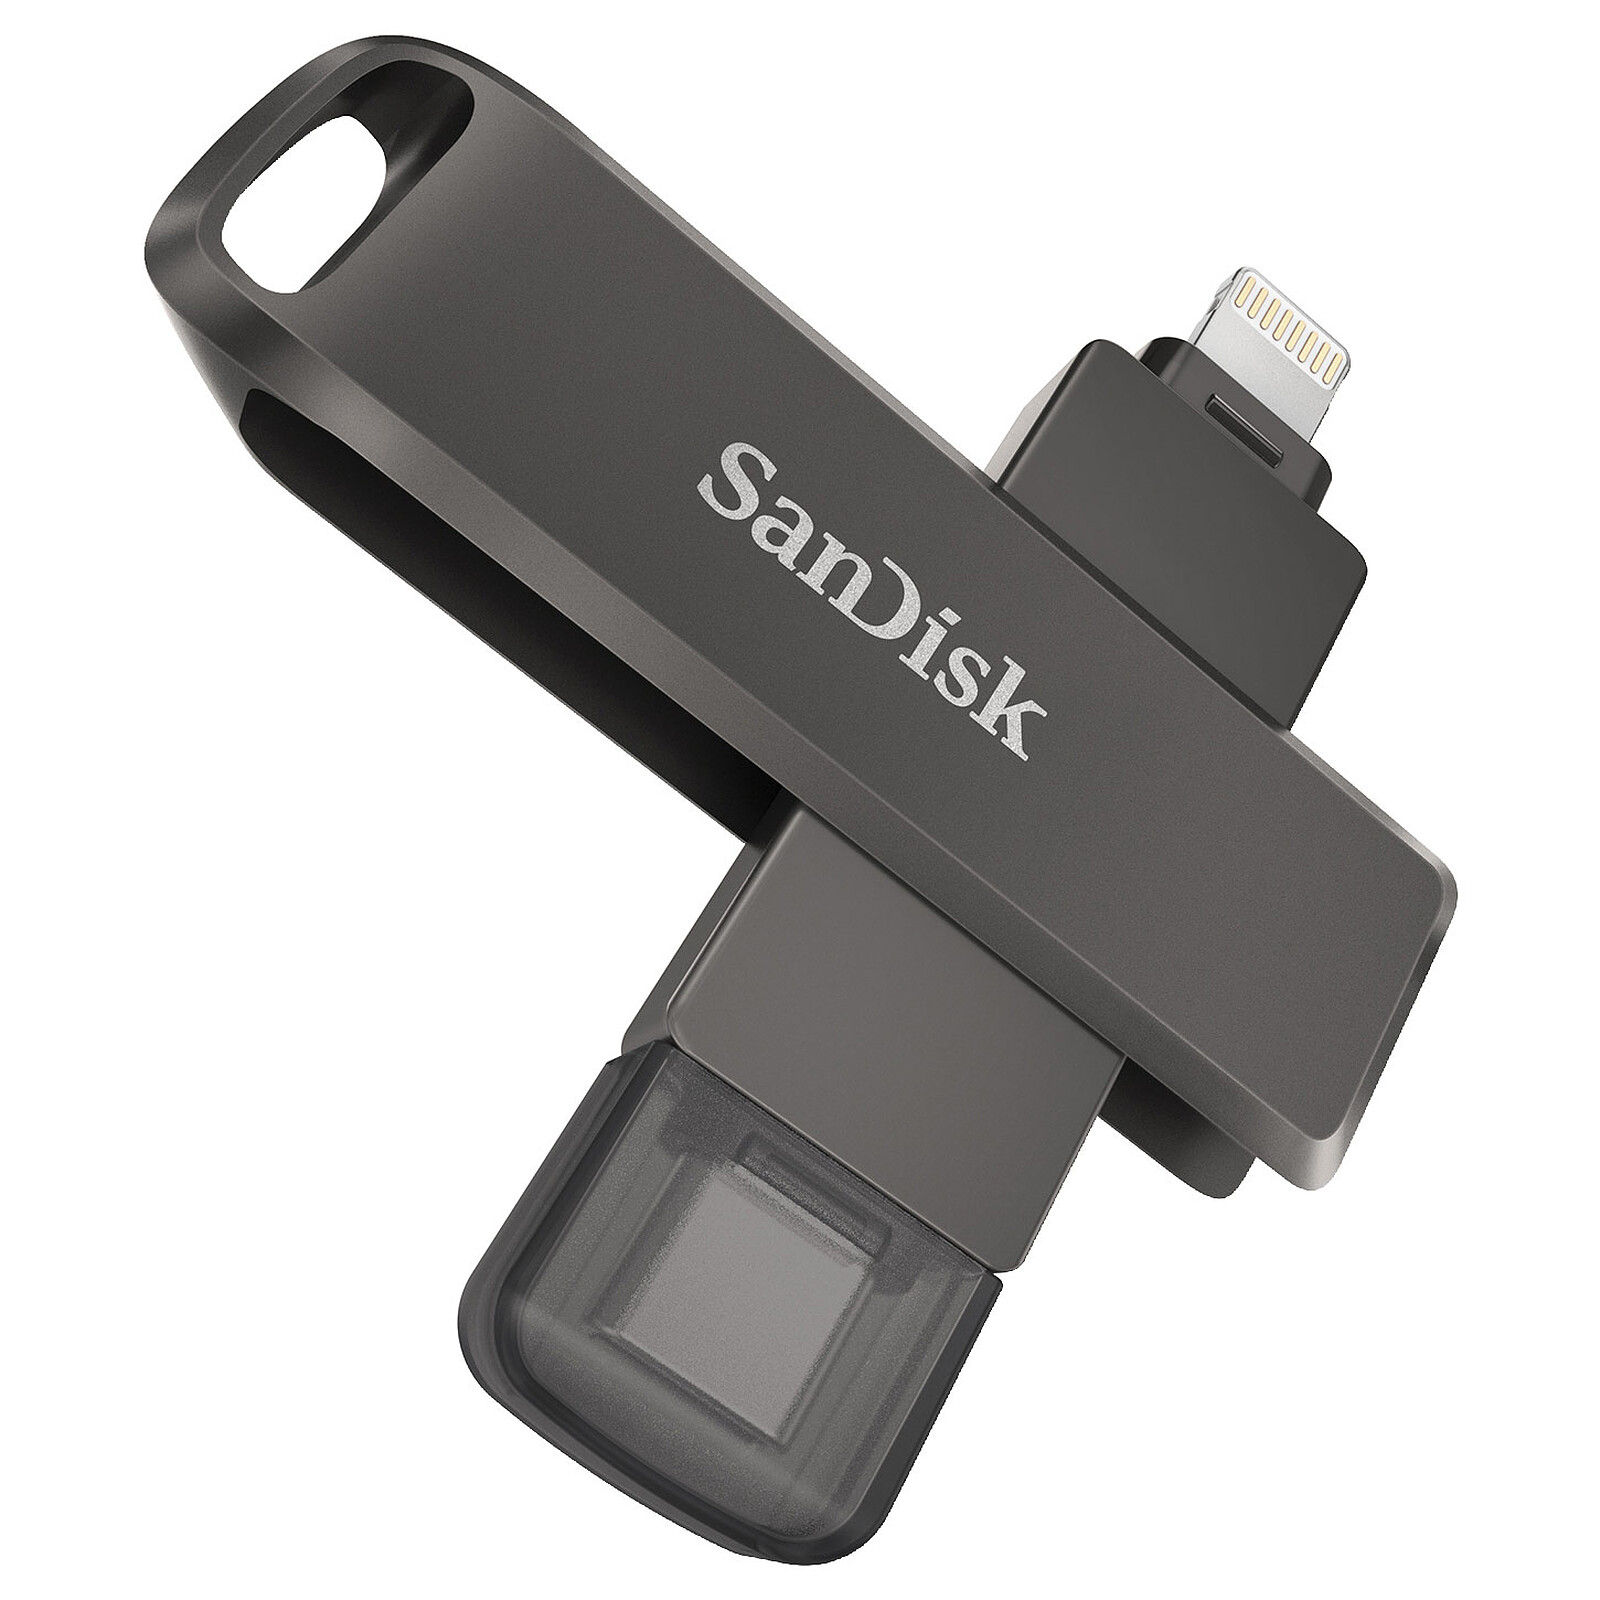 SanDisk iXpand Flash Drive Luxe 64 Go - Clé USB - LDLC